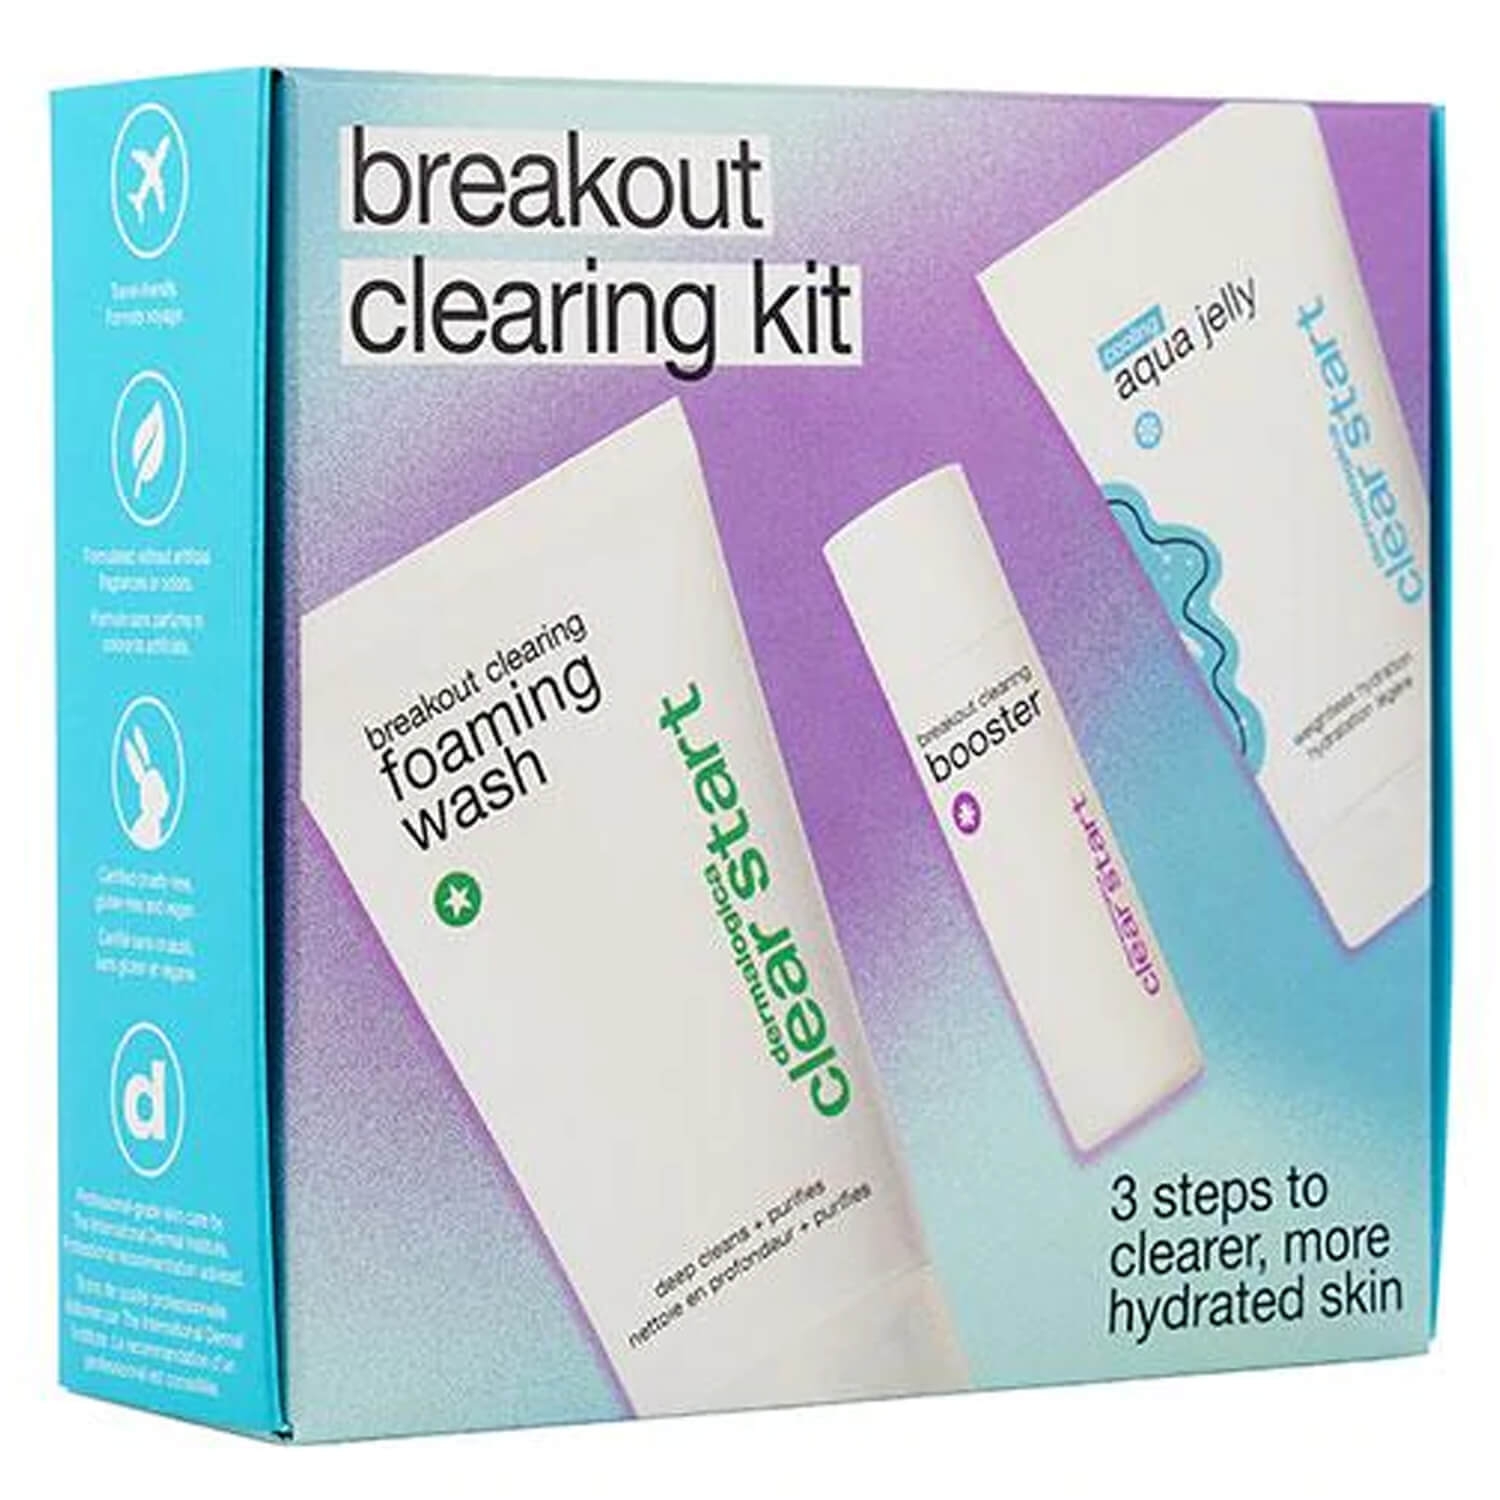 Produktbild von Clear Start - Breakout Clearing Kit